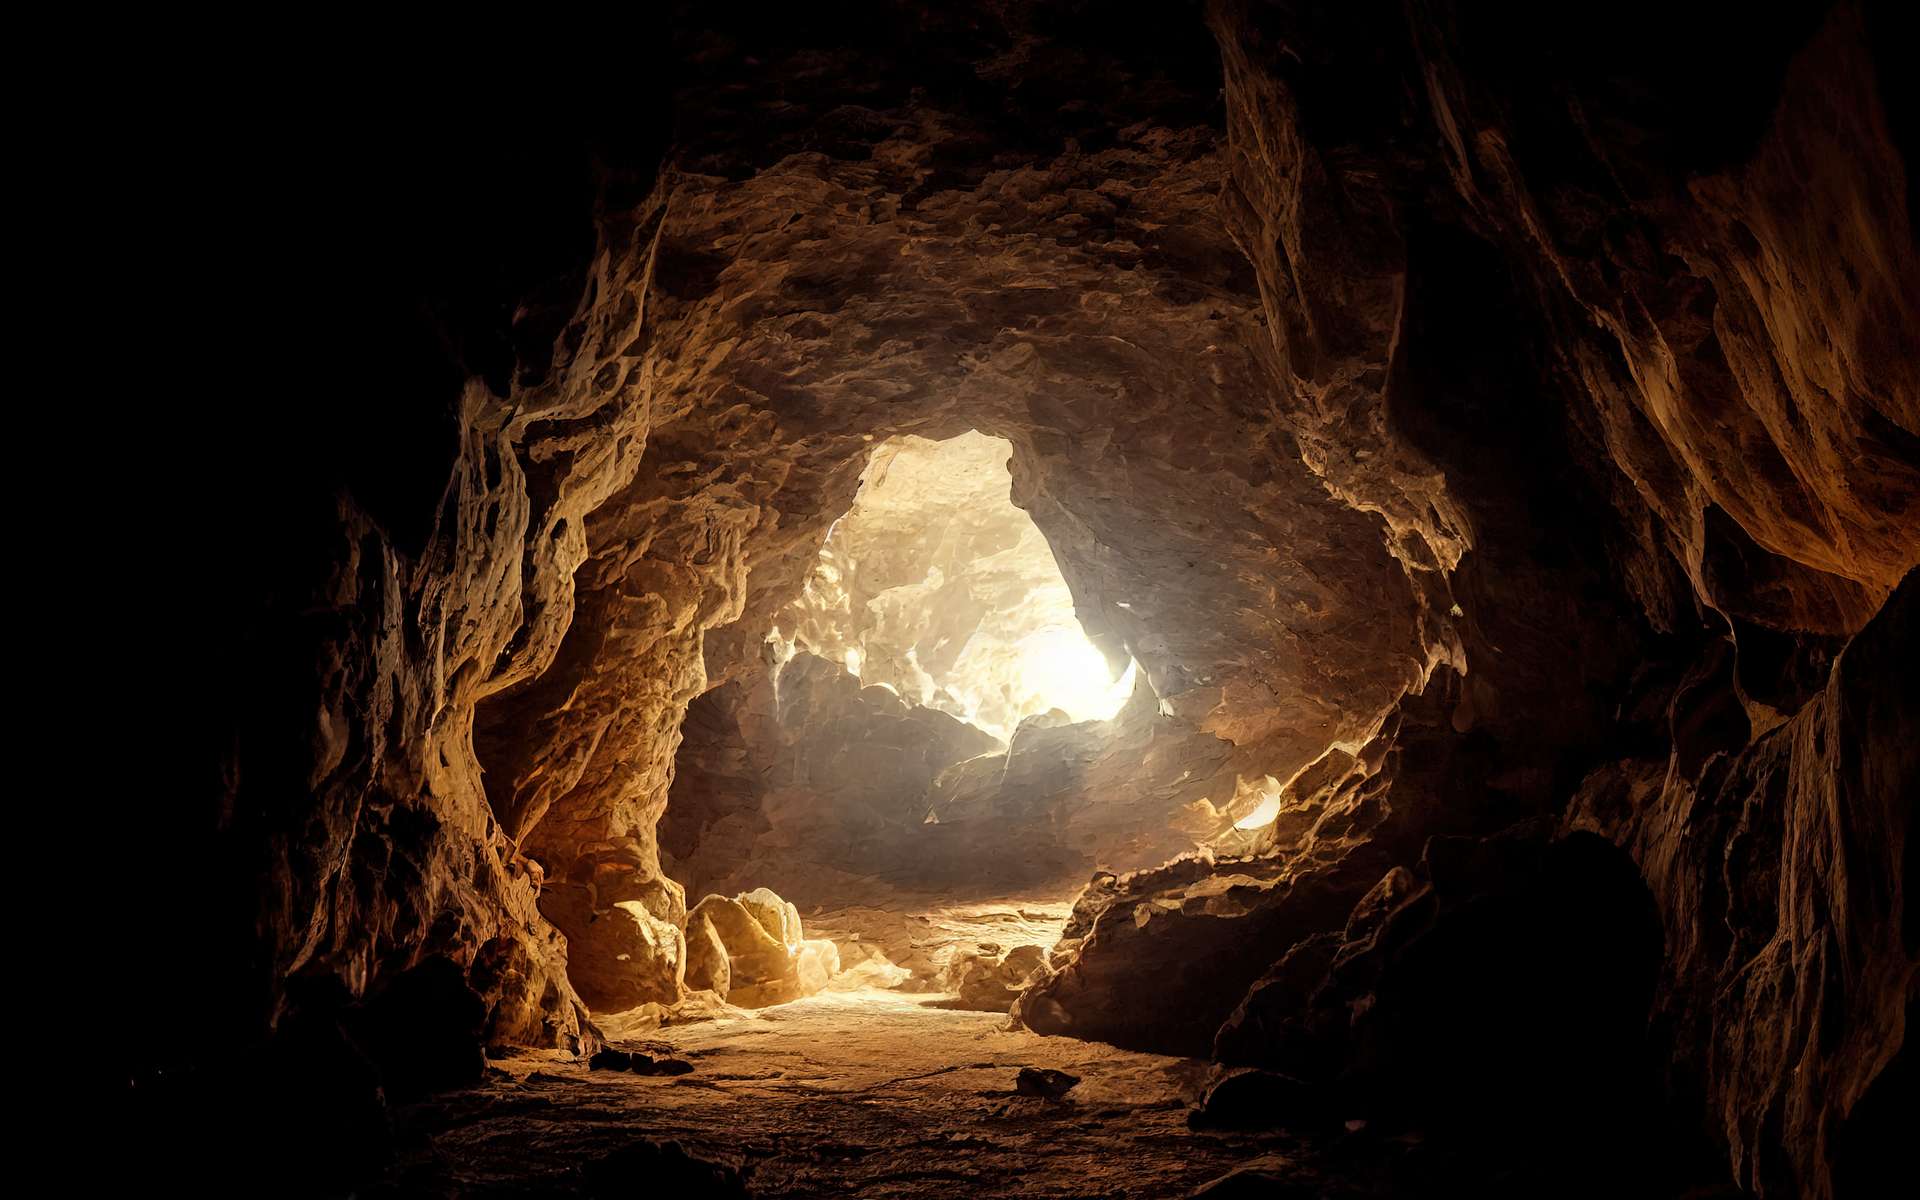 Une véritable merveille : découverte d'une grotte ornée de peintures préhistoriques datant de 24 000 ans !